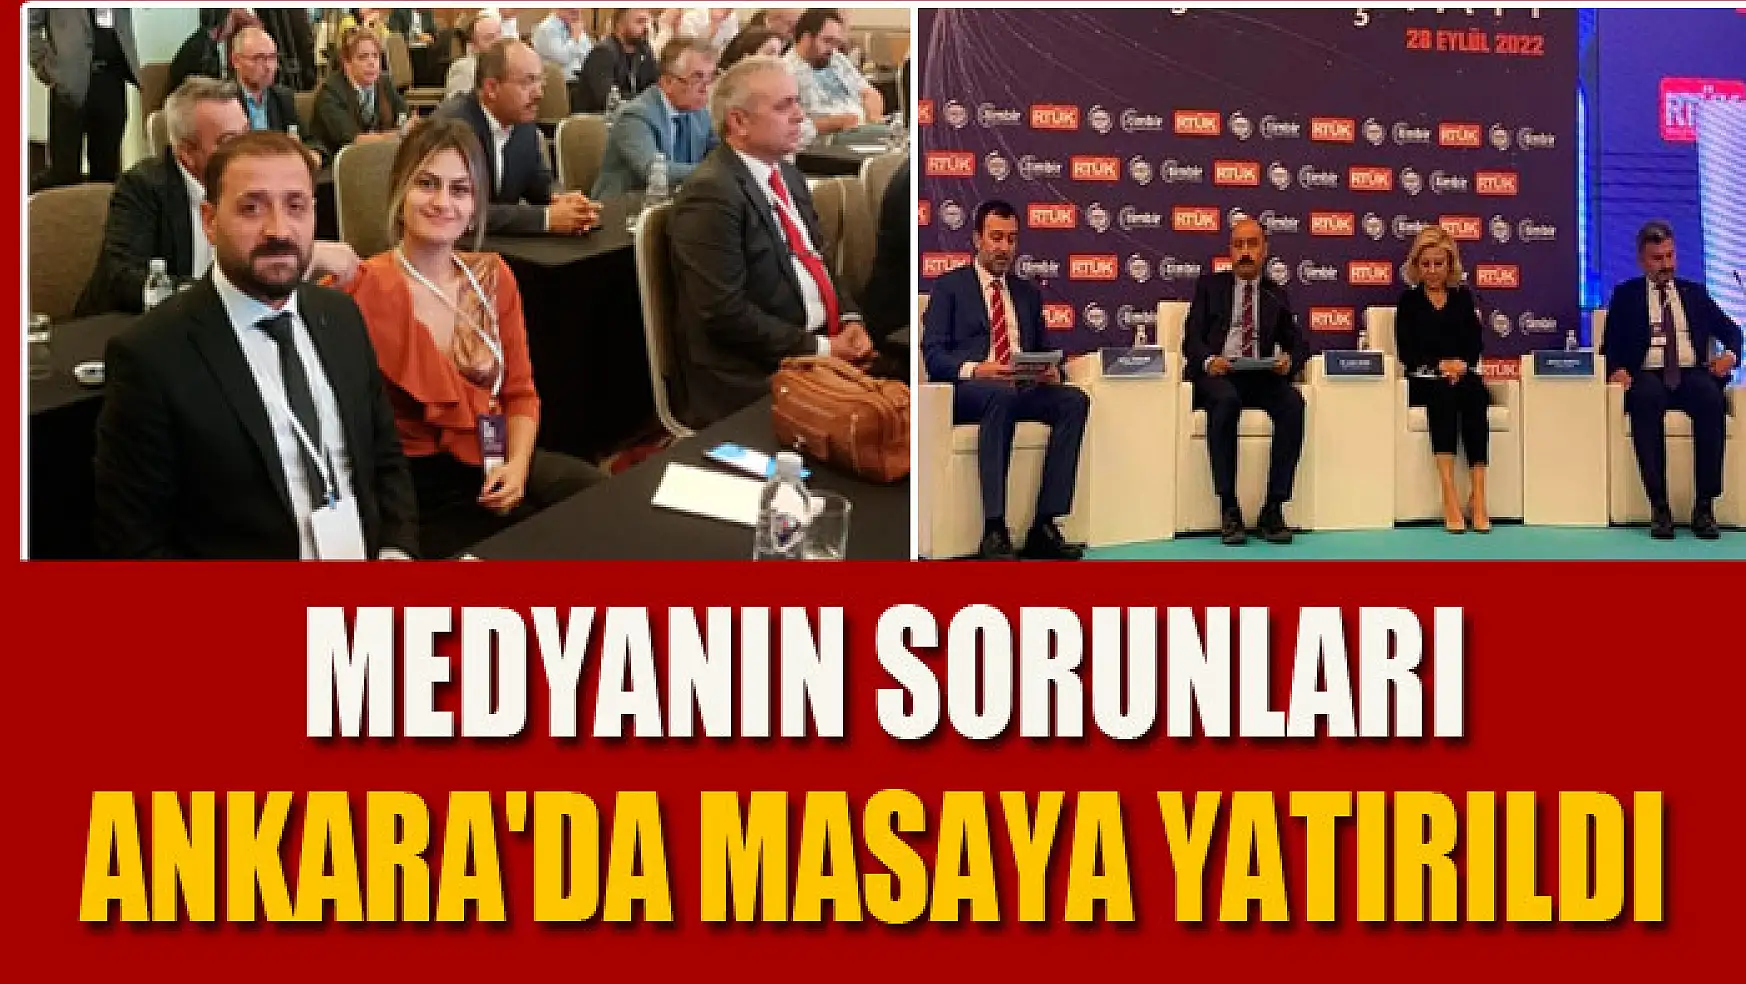 Medyanın sorunları Ankara'da masaya yatırıldı